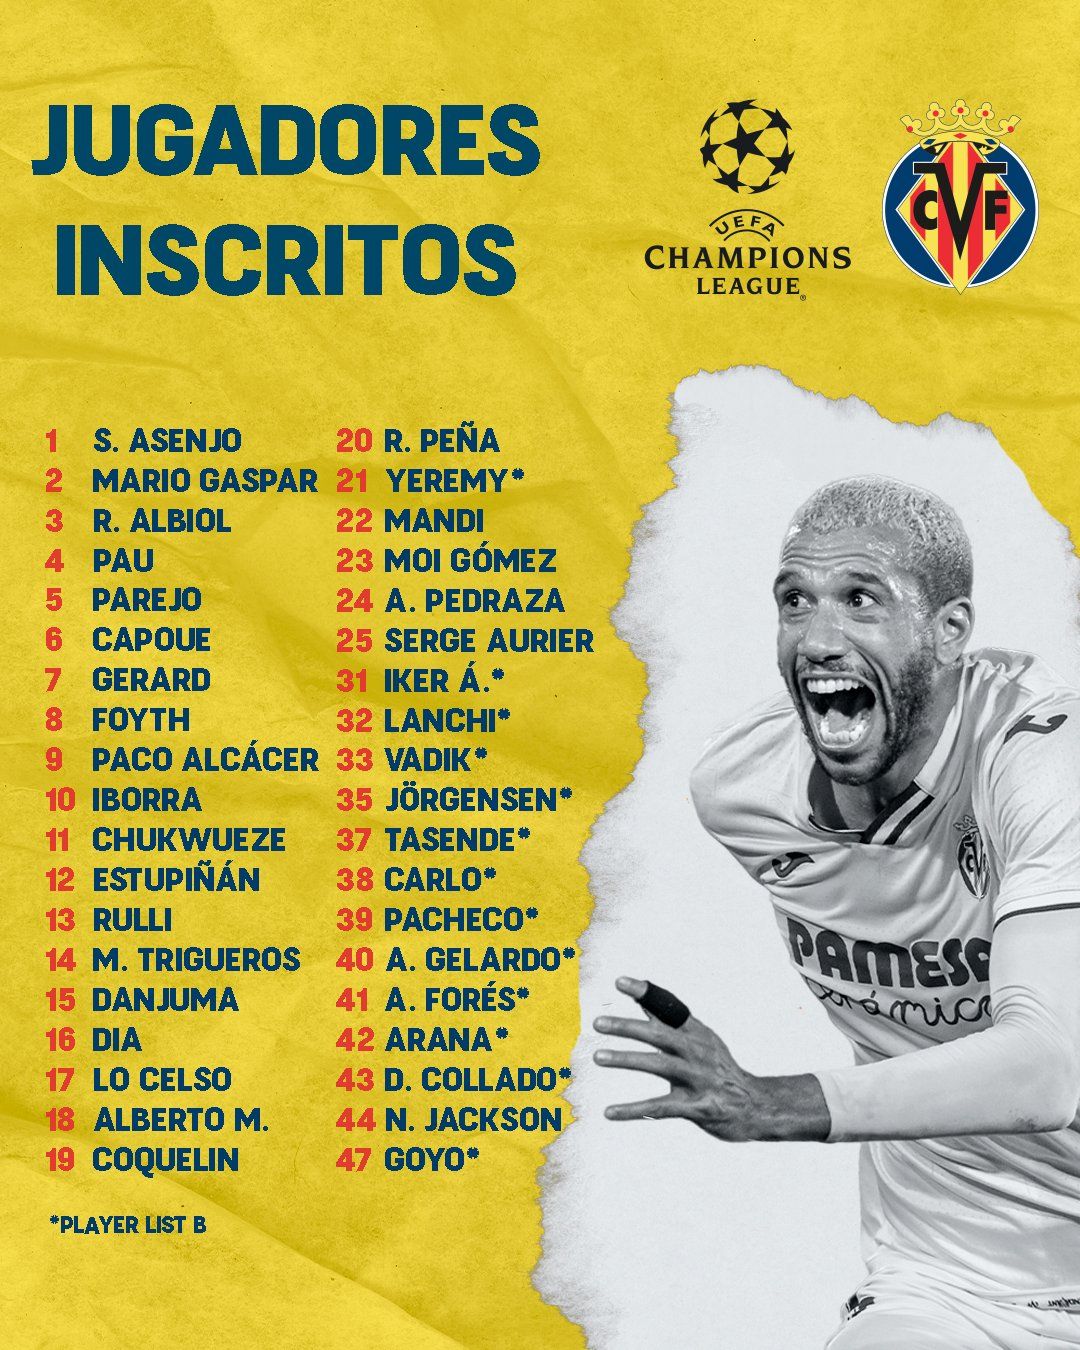 Este es el listado de jugadores inscritos por el Villarreal CF en la Champions League.